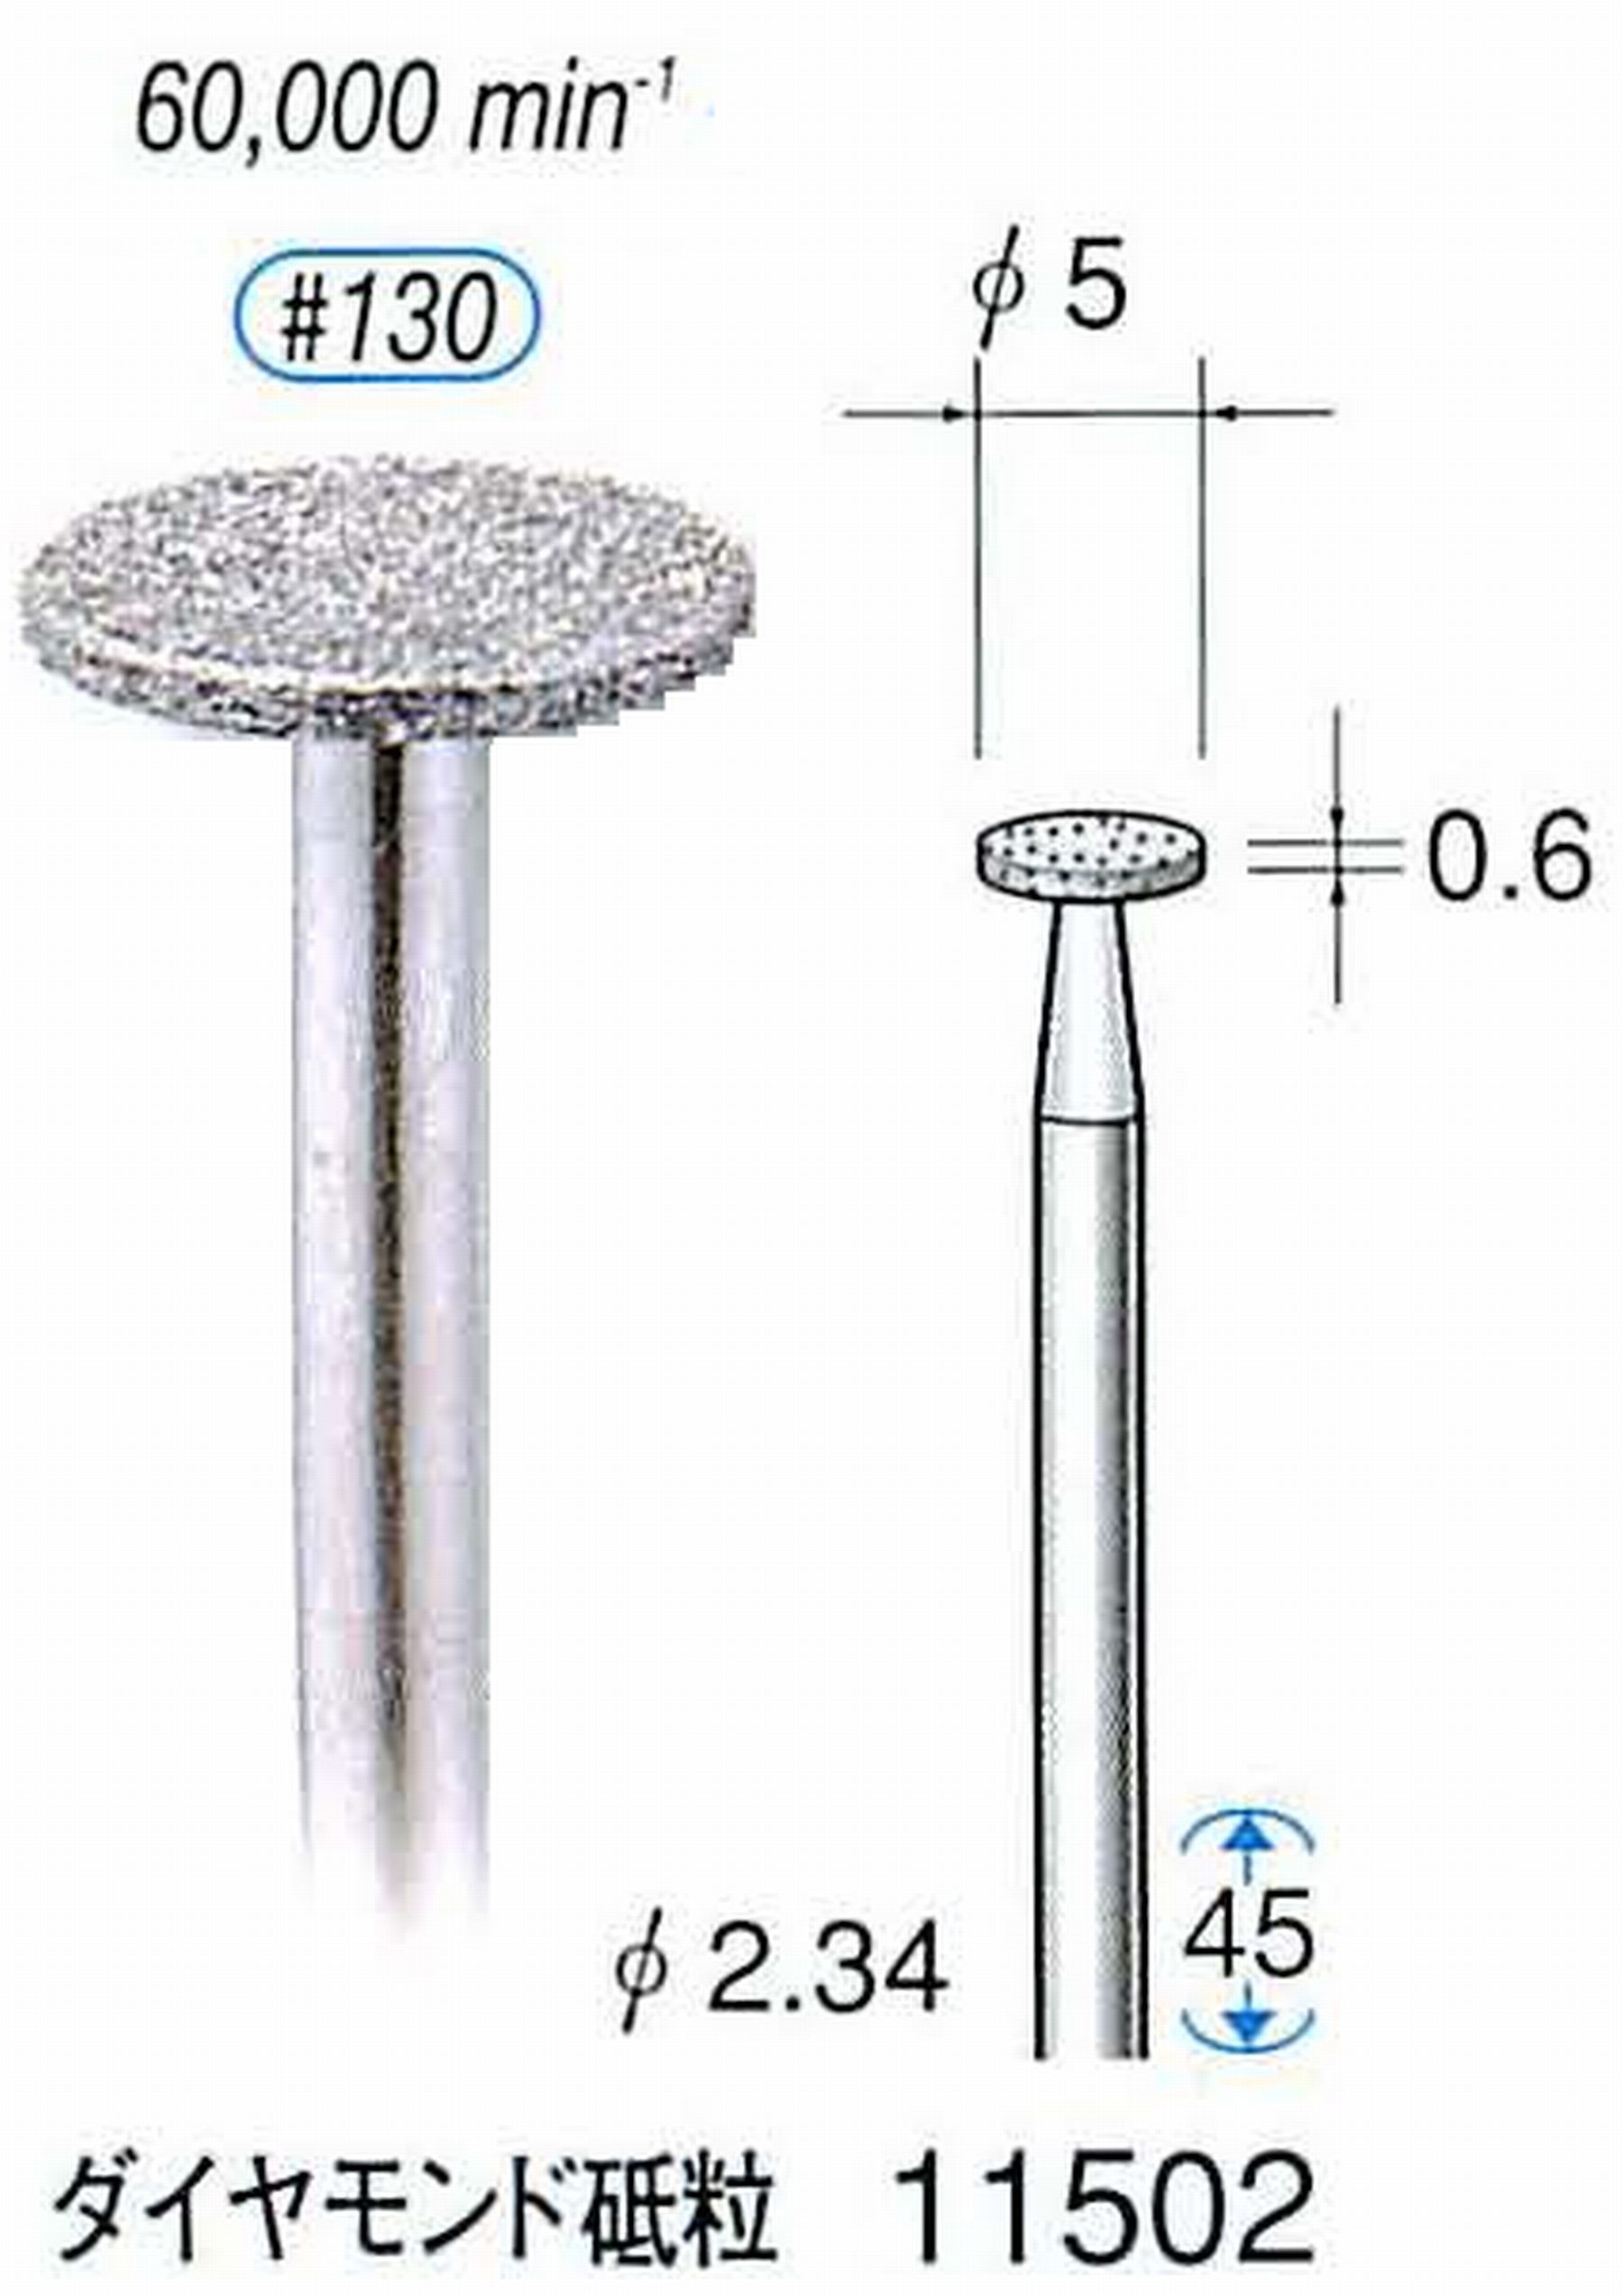 ナカニシ/NAKANISHI 電着ダイヤモンドバー ダイヤモンド砥粒 軸径(シャンク)φ2.34mm 11502